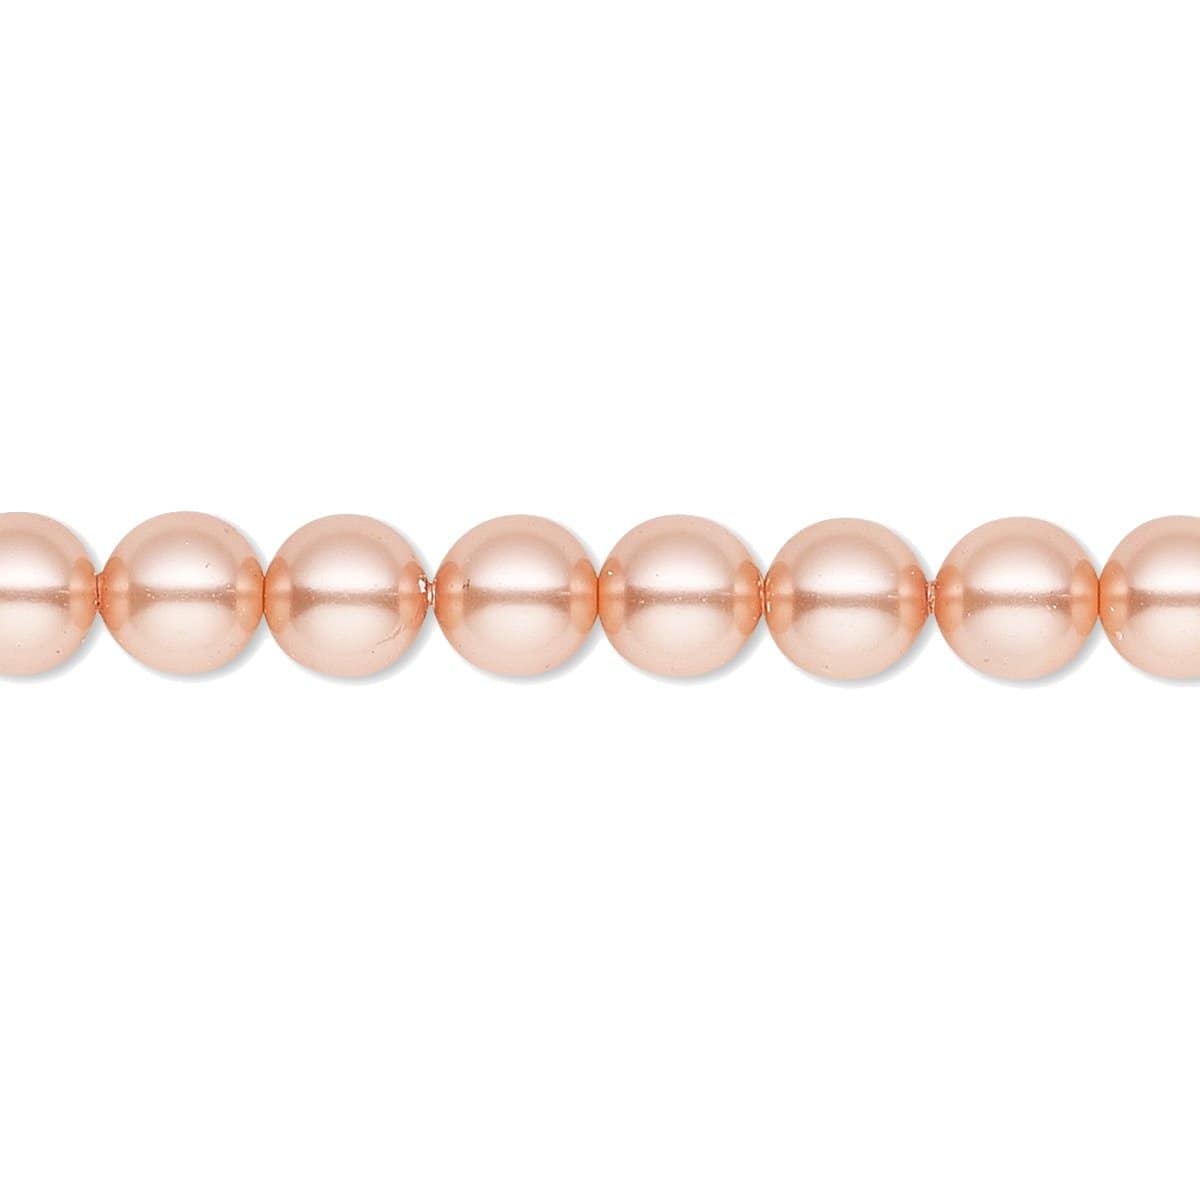  Kājas ķēdīte no persiku krāsas pērlēm 